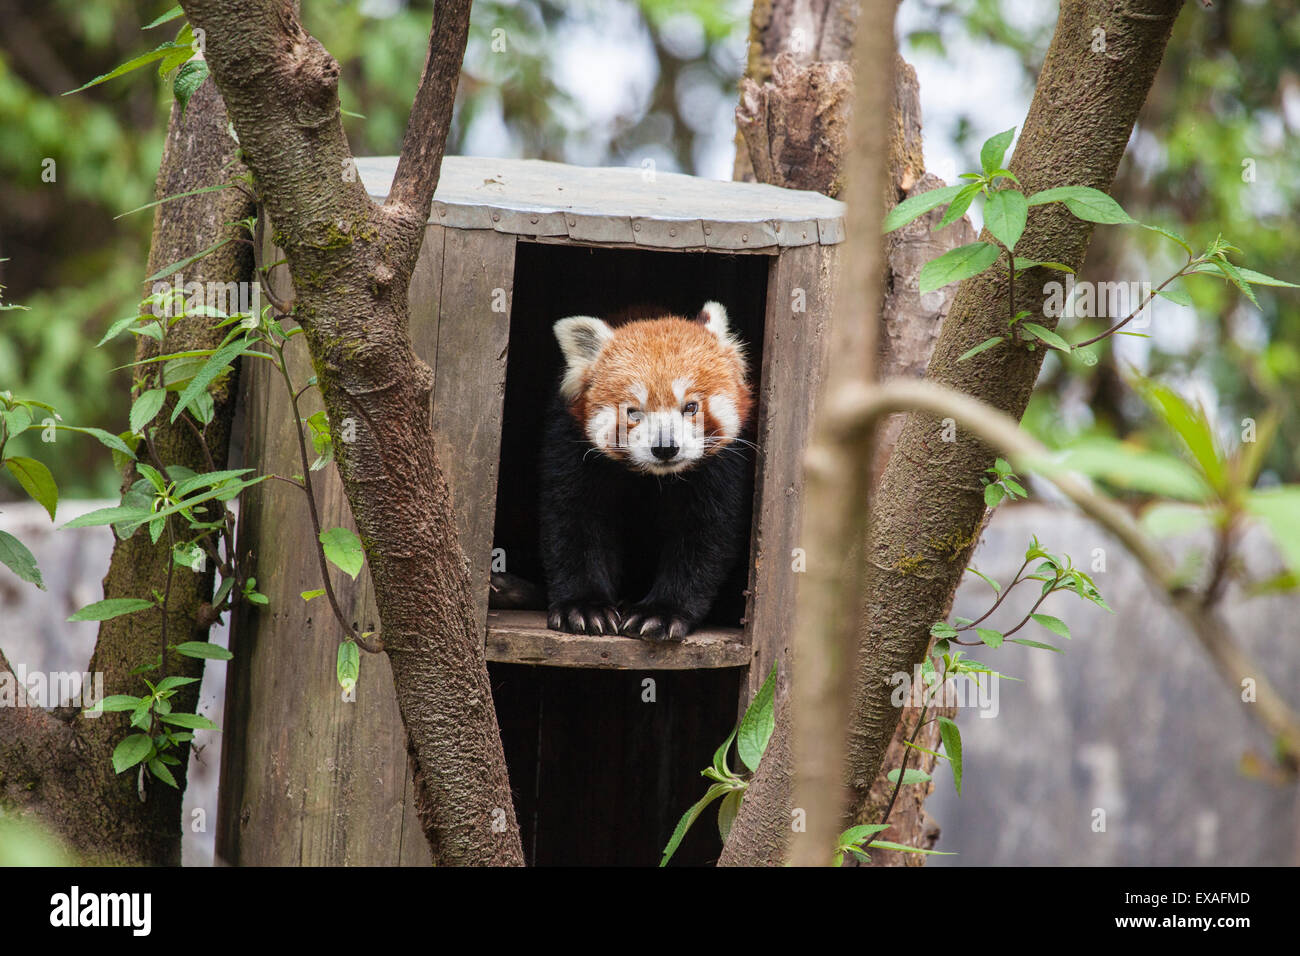 Un panda rouge reste caché dans son abri, construit par les gardes qui protègent cet animal en voie de disparition, Darjeeling, Inde, Asie Banque D'Images